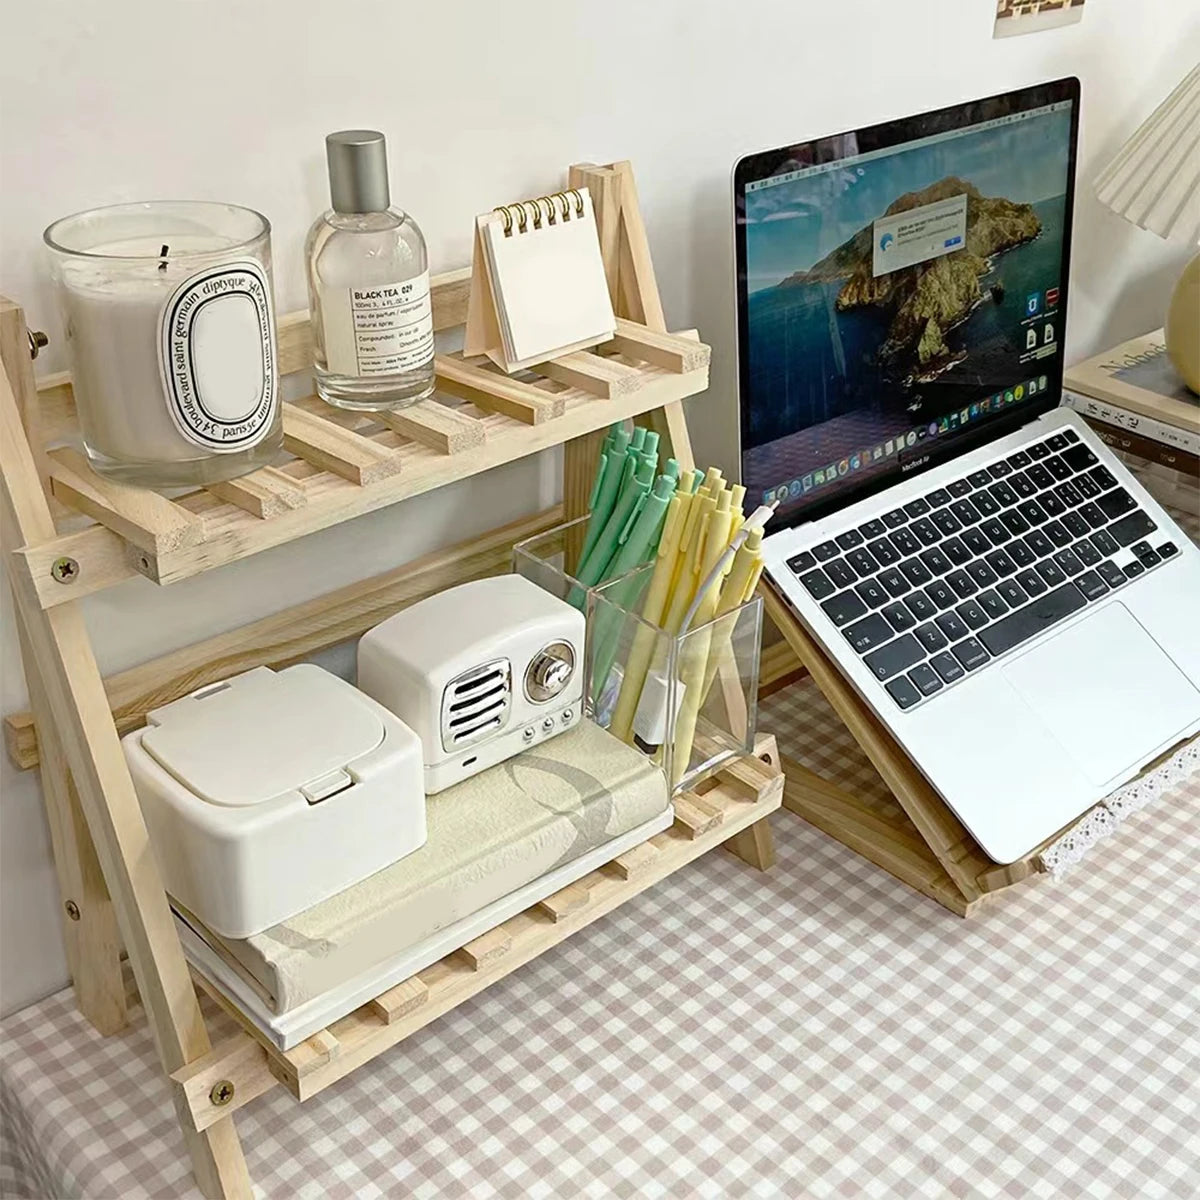 Cute Korean wooden desktop rack for organizing aesthetic